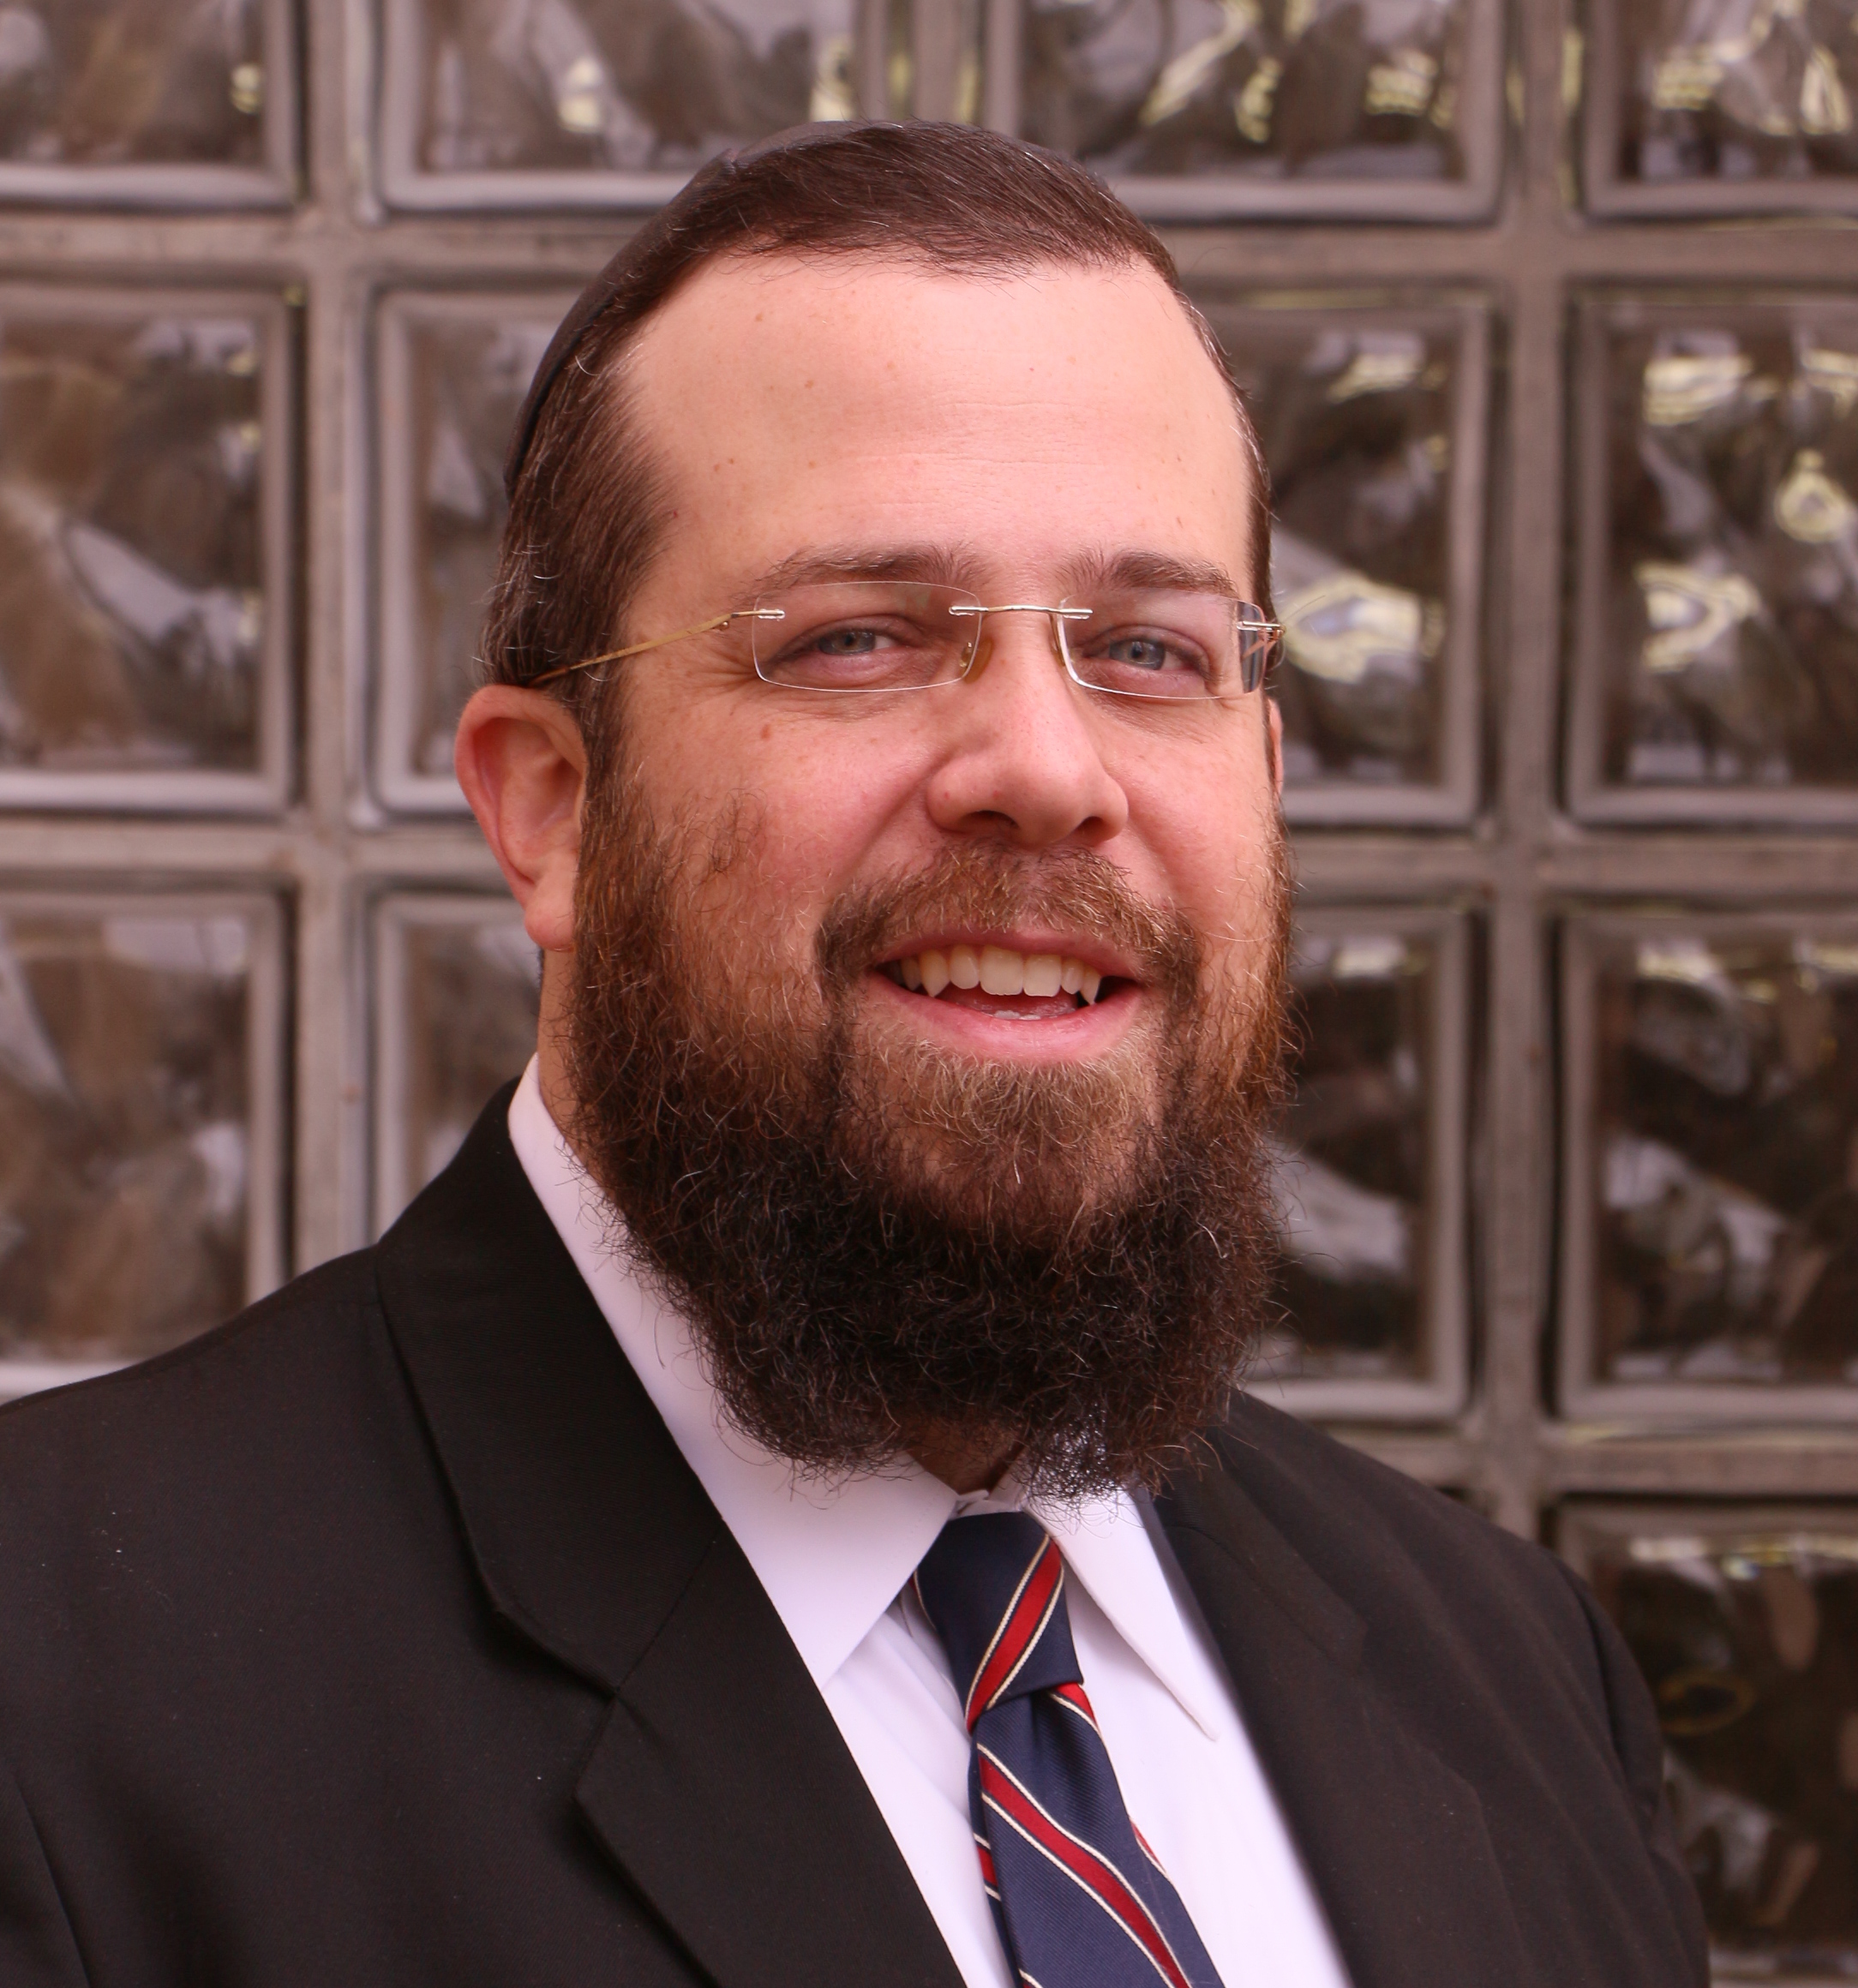 Rabbi Nadel